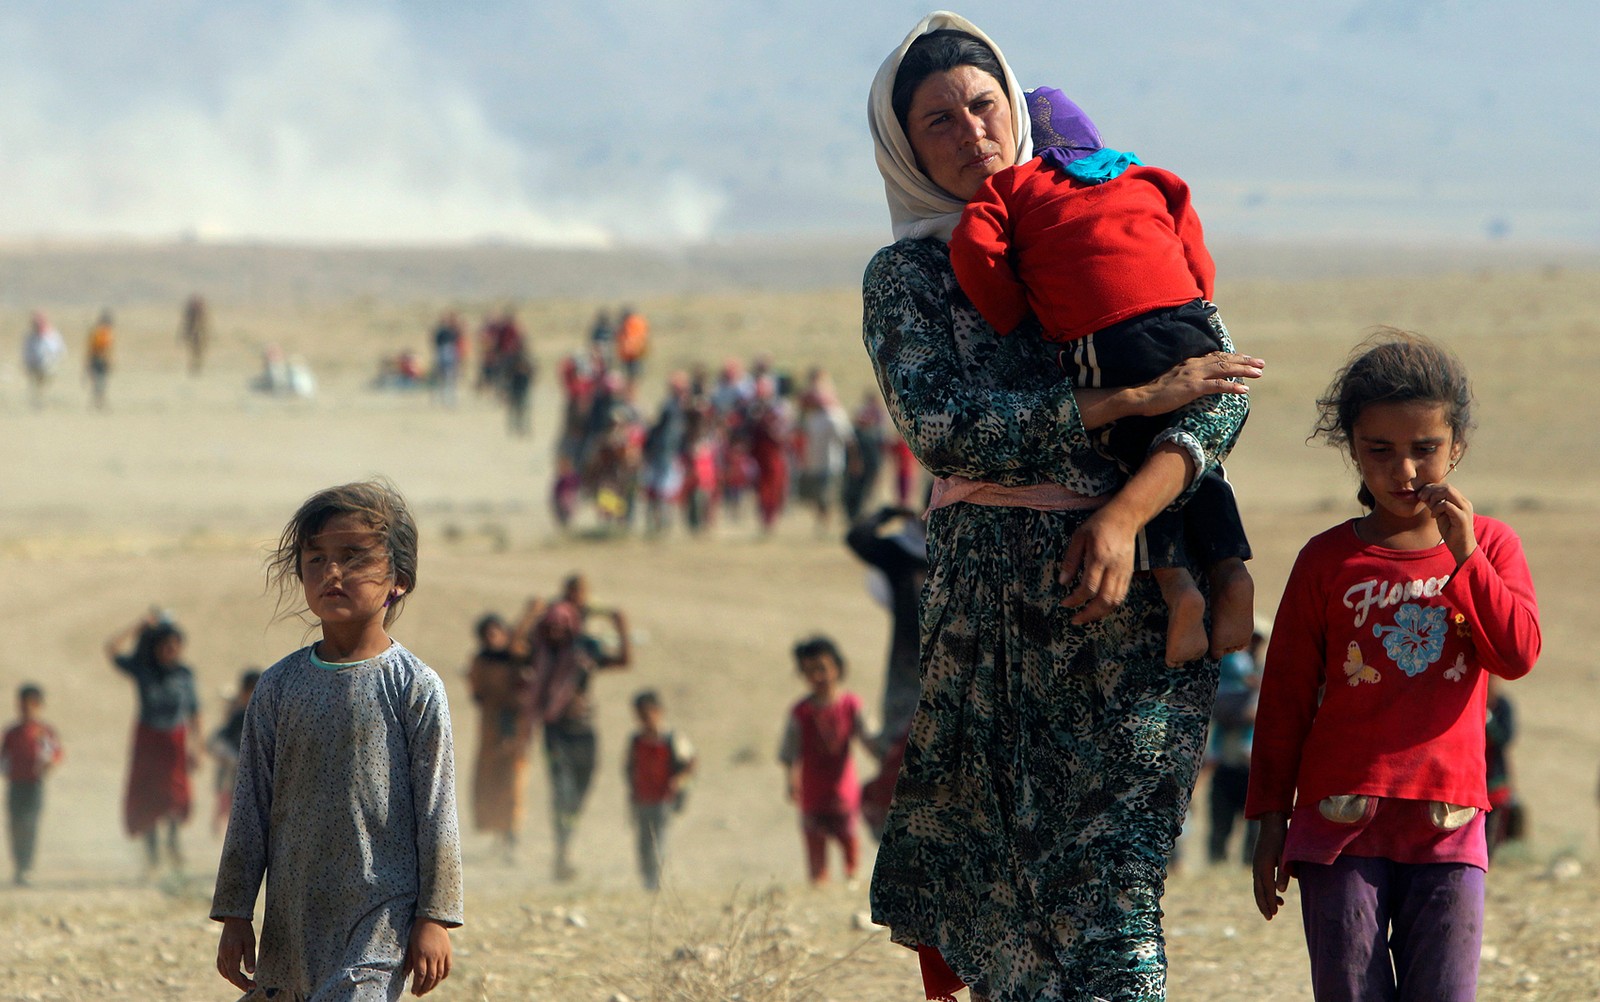 Professora da Suécia organiza resgate de aluno yazidi em região dominada pelo Estado Islâmico